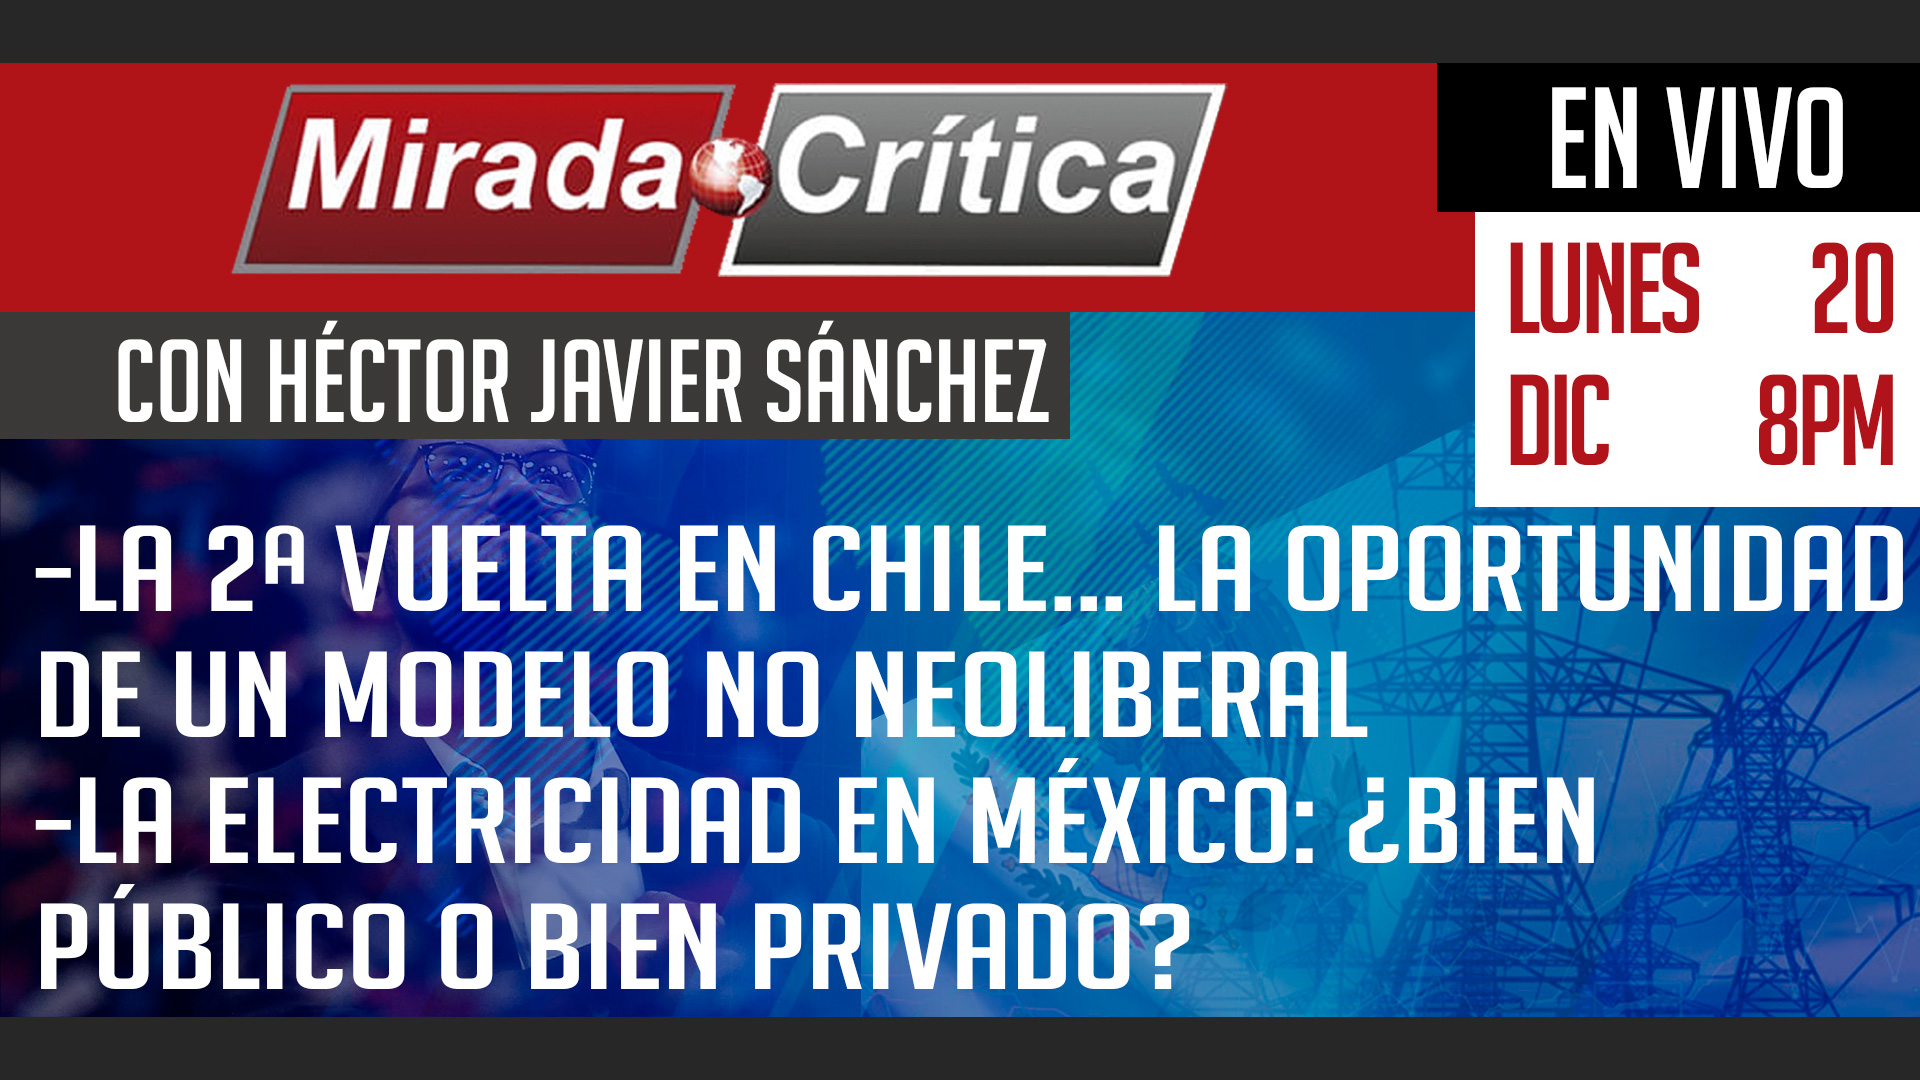 Chile… La oportunidad de un modelo no neoliberal / La electricidad: ¿bien público o bien privado? - Mirada Crítica